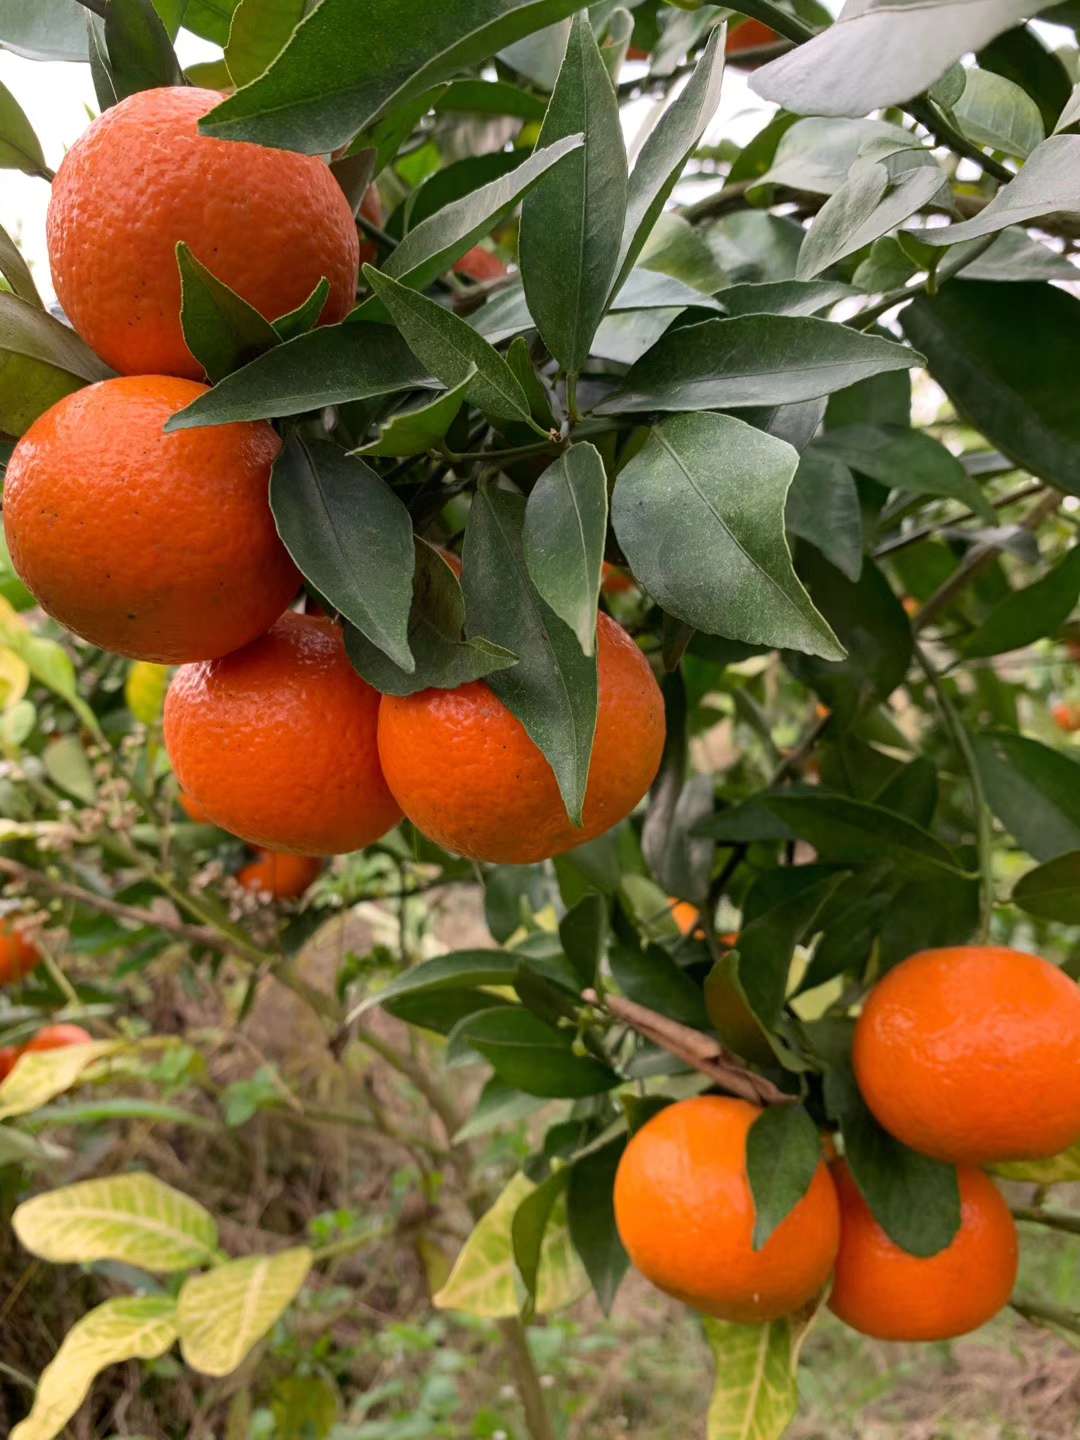 良种柑橘美国糖橘种类介绍3506 作者:imogor 